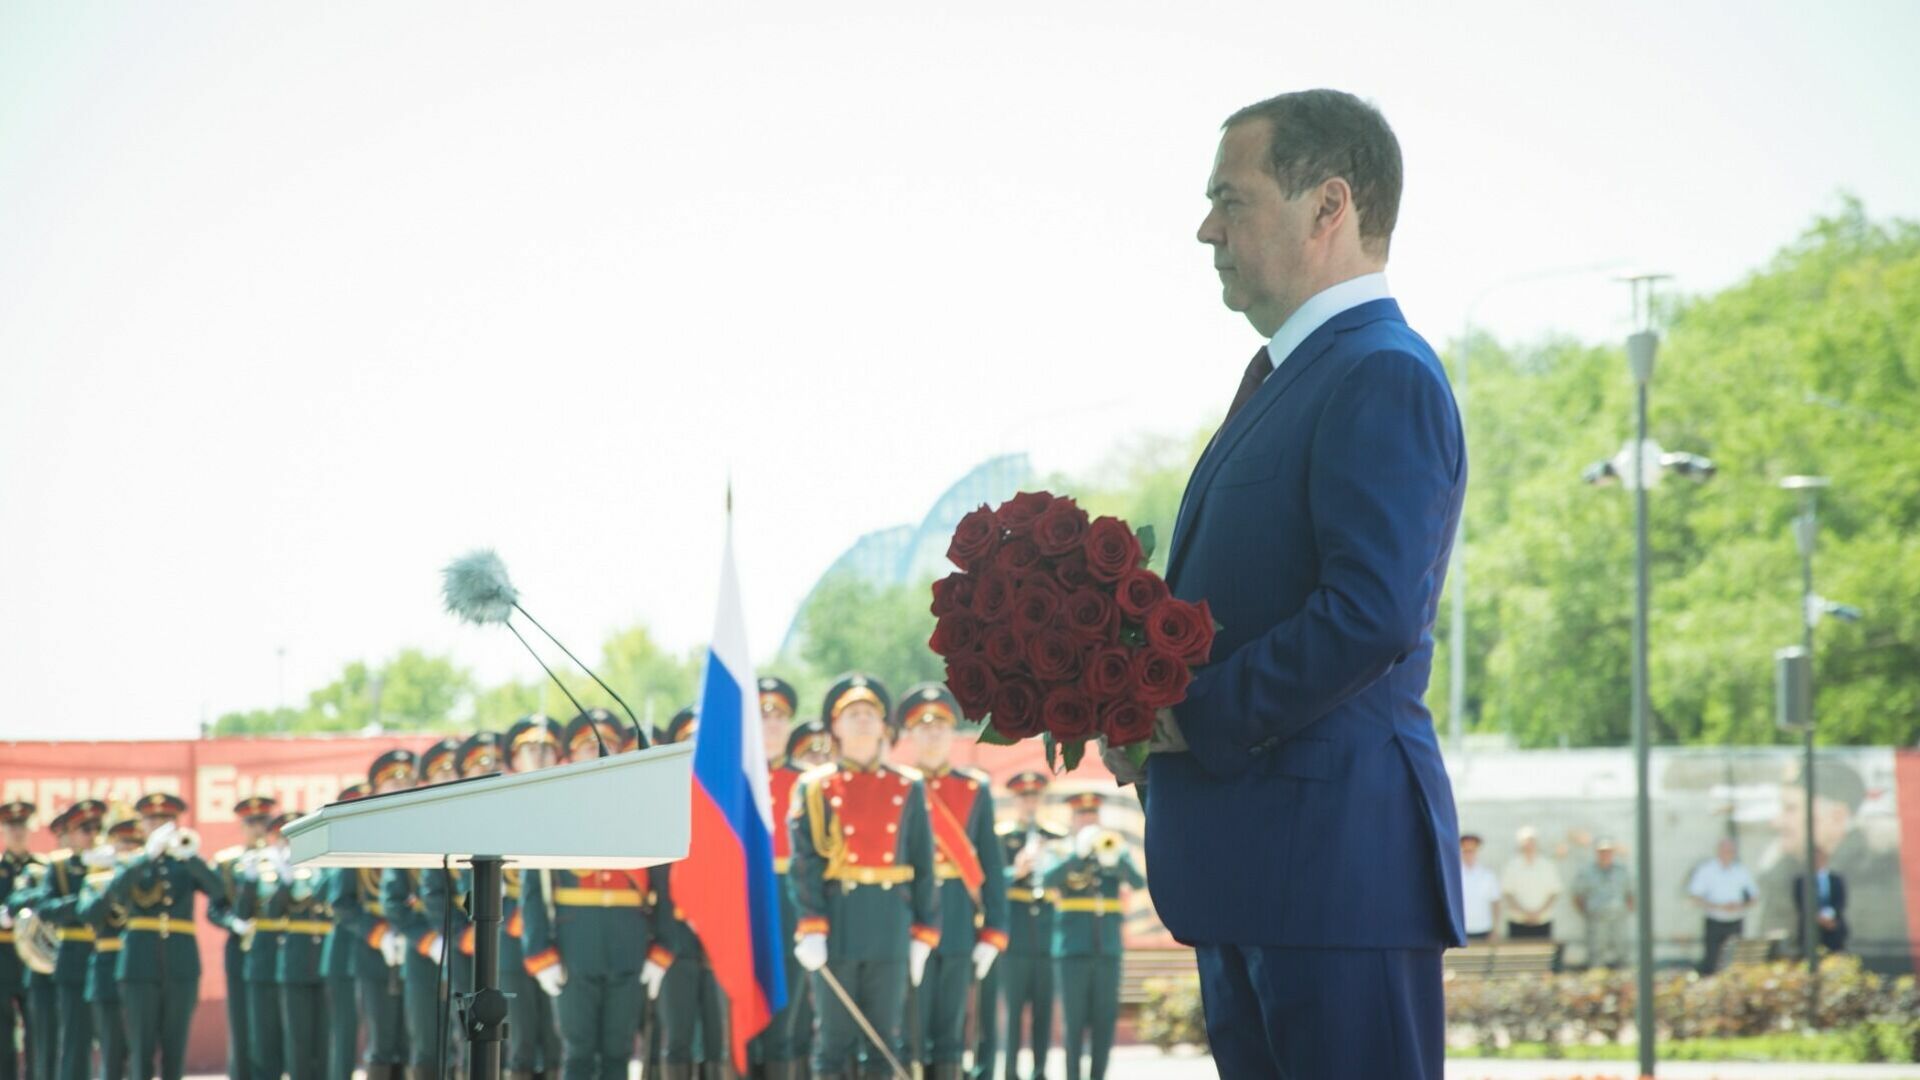 Кривые зеркала экс-президента, или что происходит с Дмитрием Медведевым?